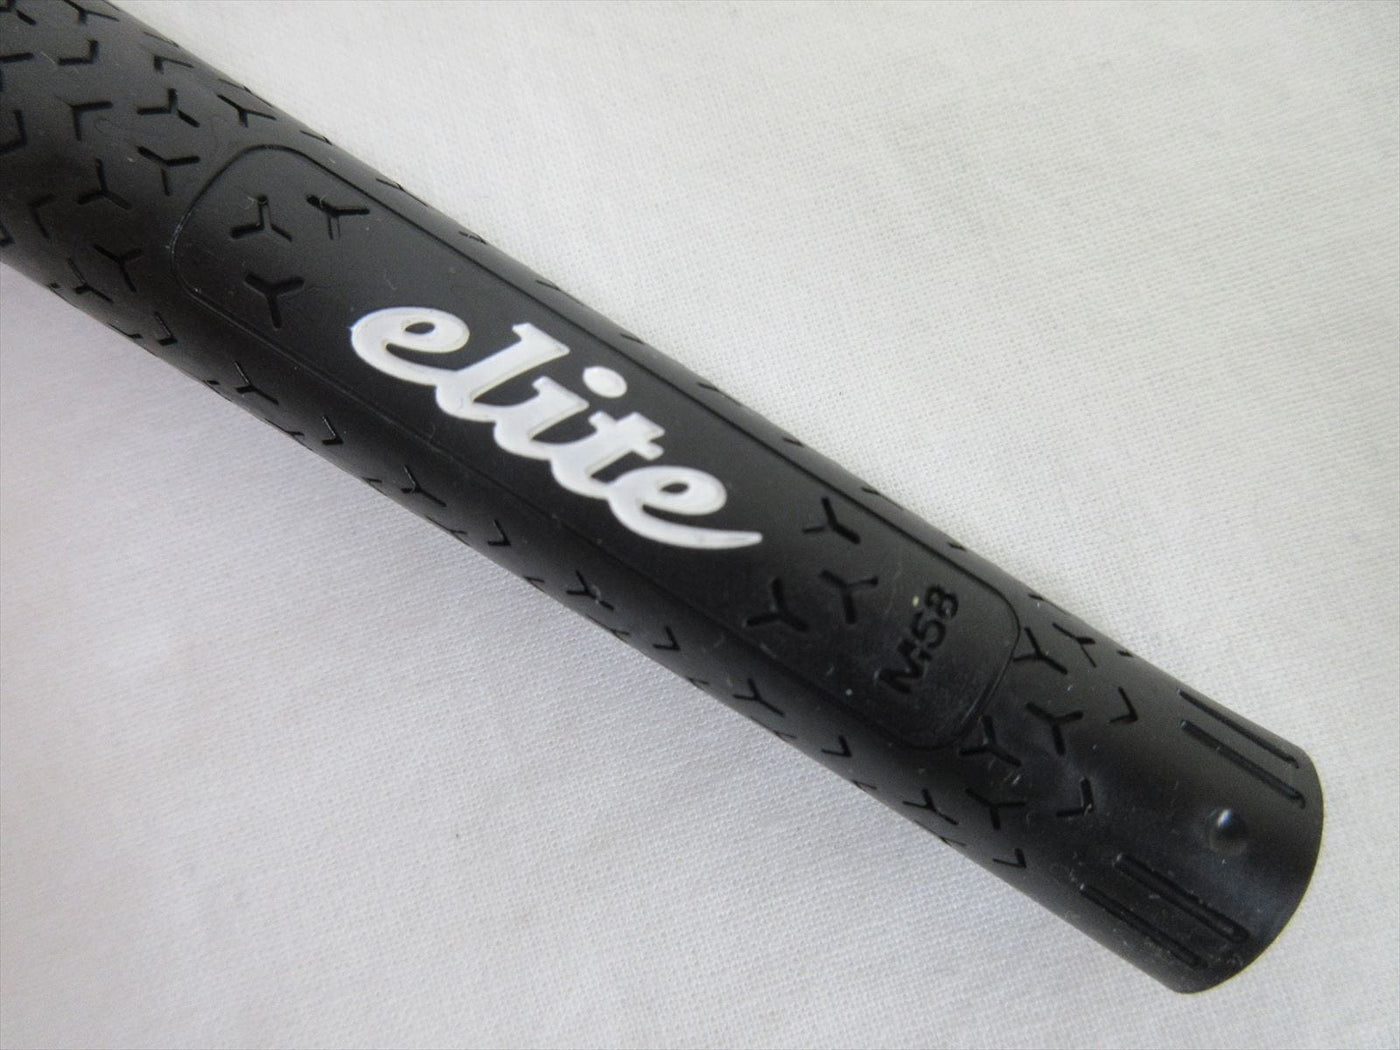 elite grips y360 sv black green5 20 pieces m58 round